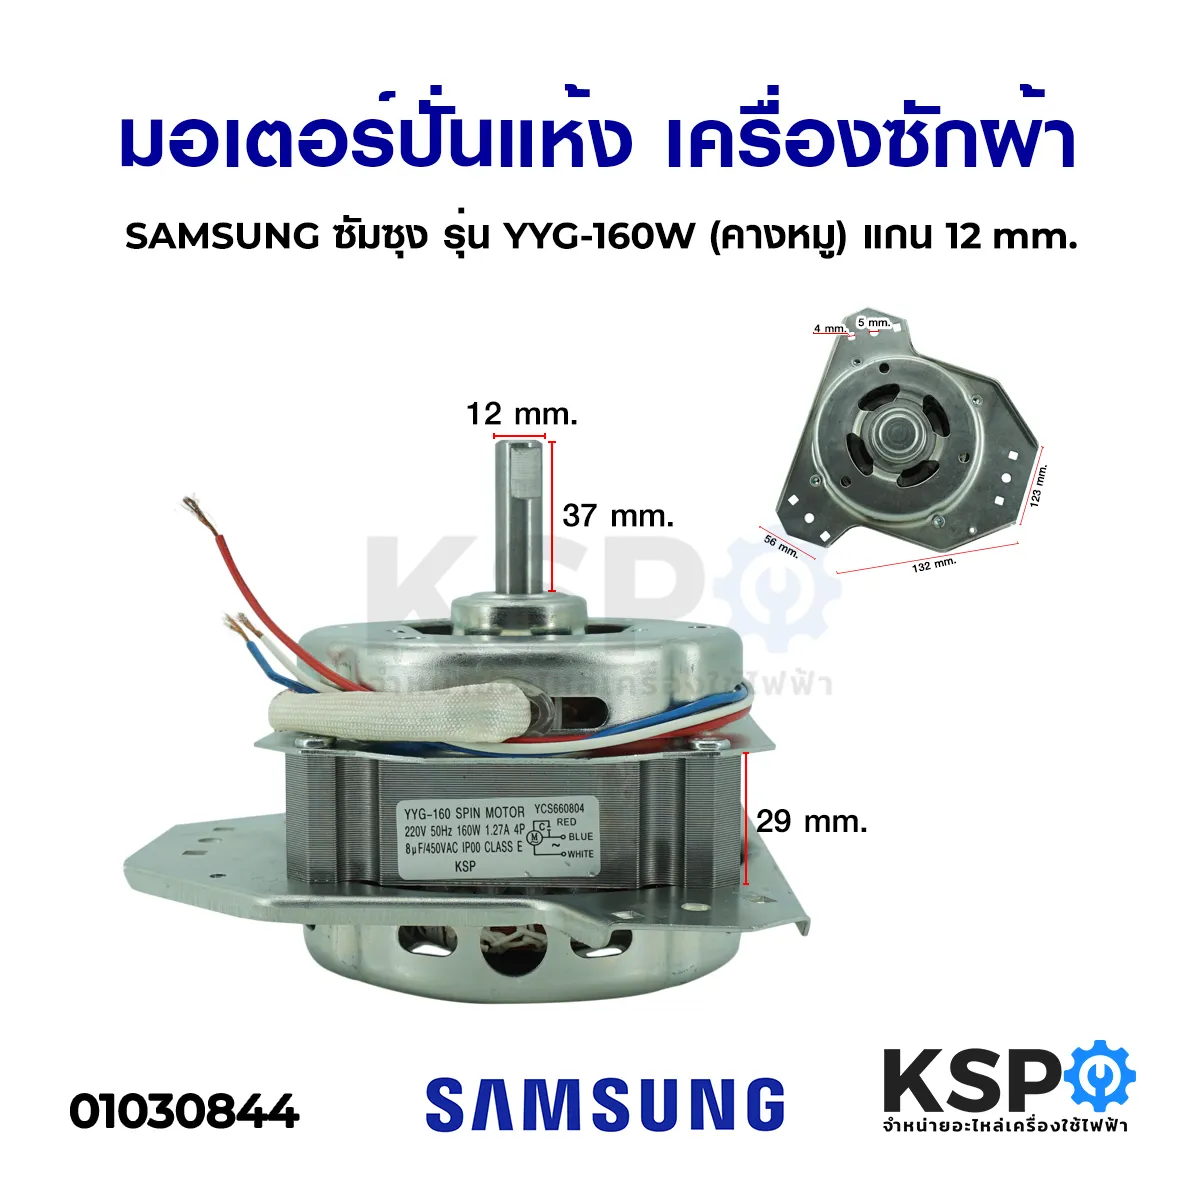 มอเตอร์ปั่นแห้ง เครื่องซักผ้า SAMSUNG ซัมซุง รุ่น YYG-160W (คางหมู 3ขา) แกน 12mm อะไหล่เครื่องซักผ้า